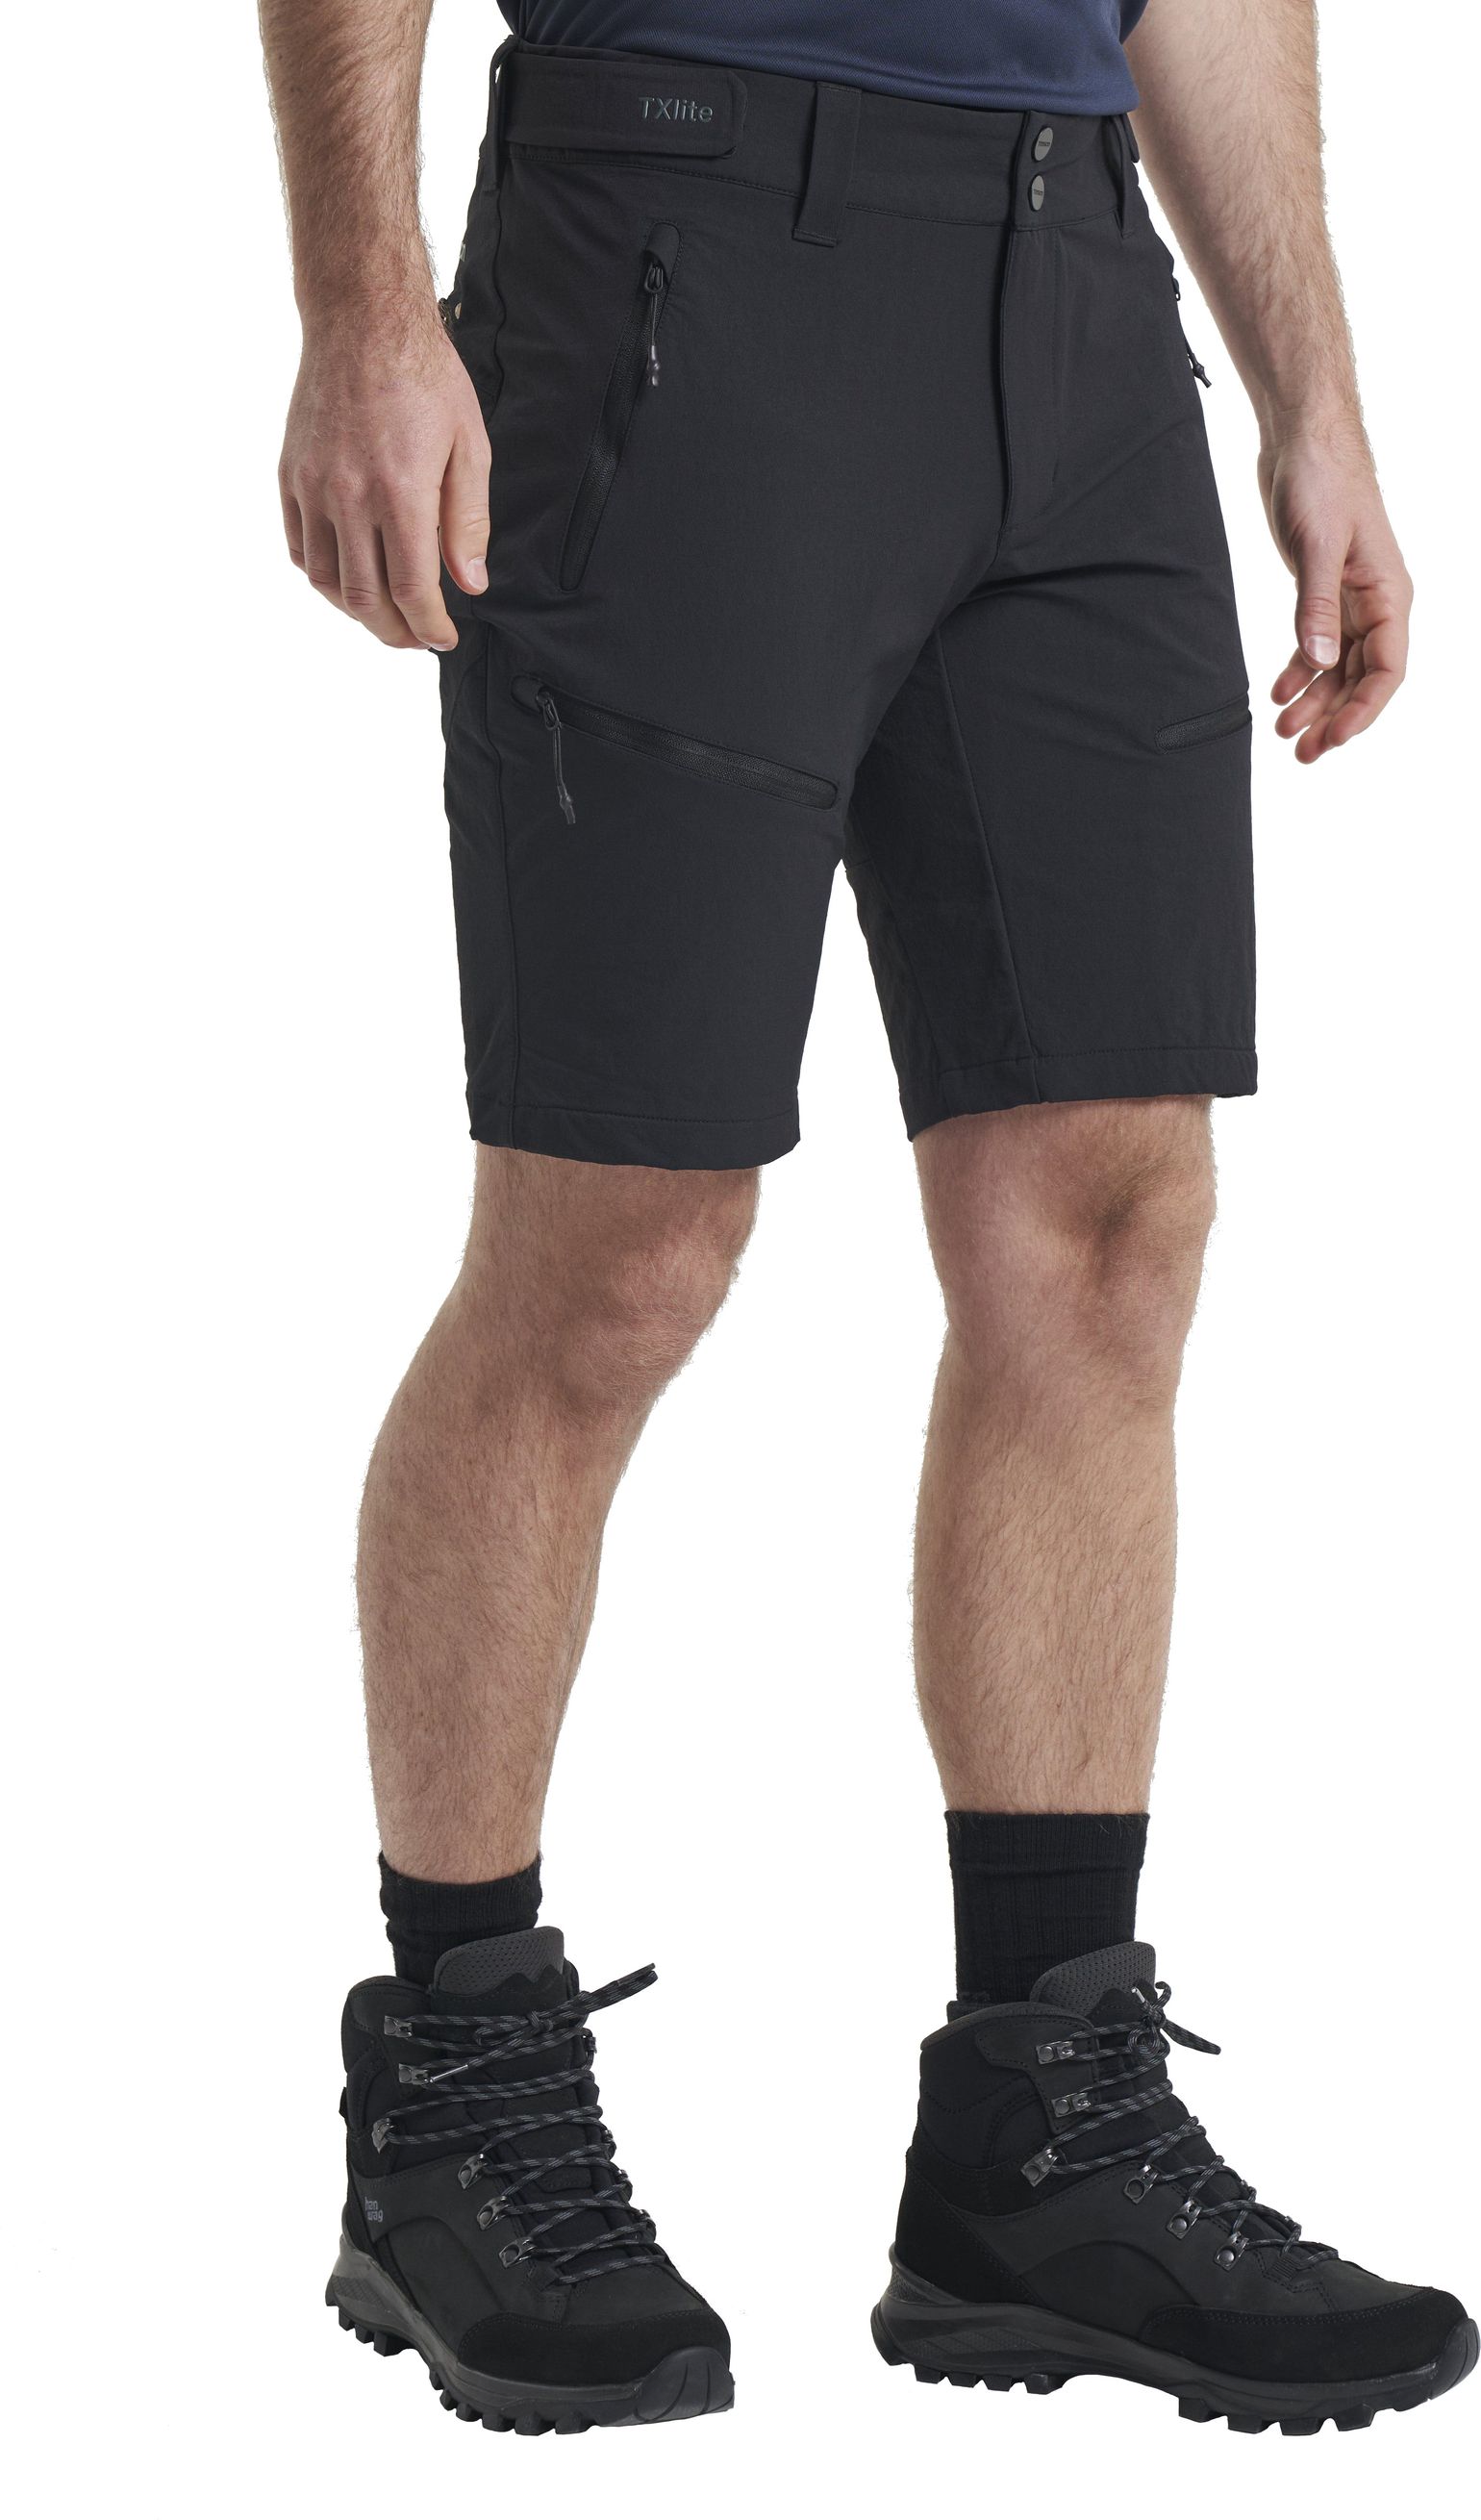 Men's TXlite Flex Shorts Black